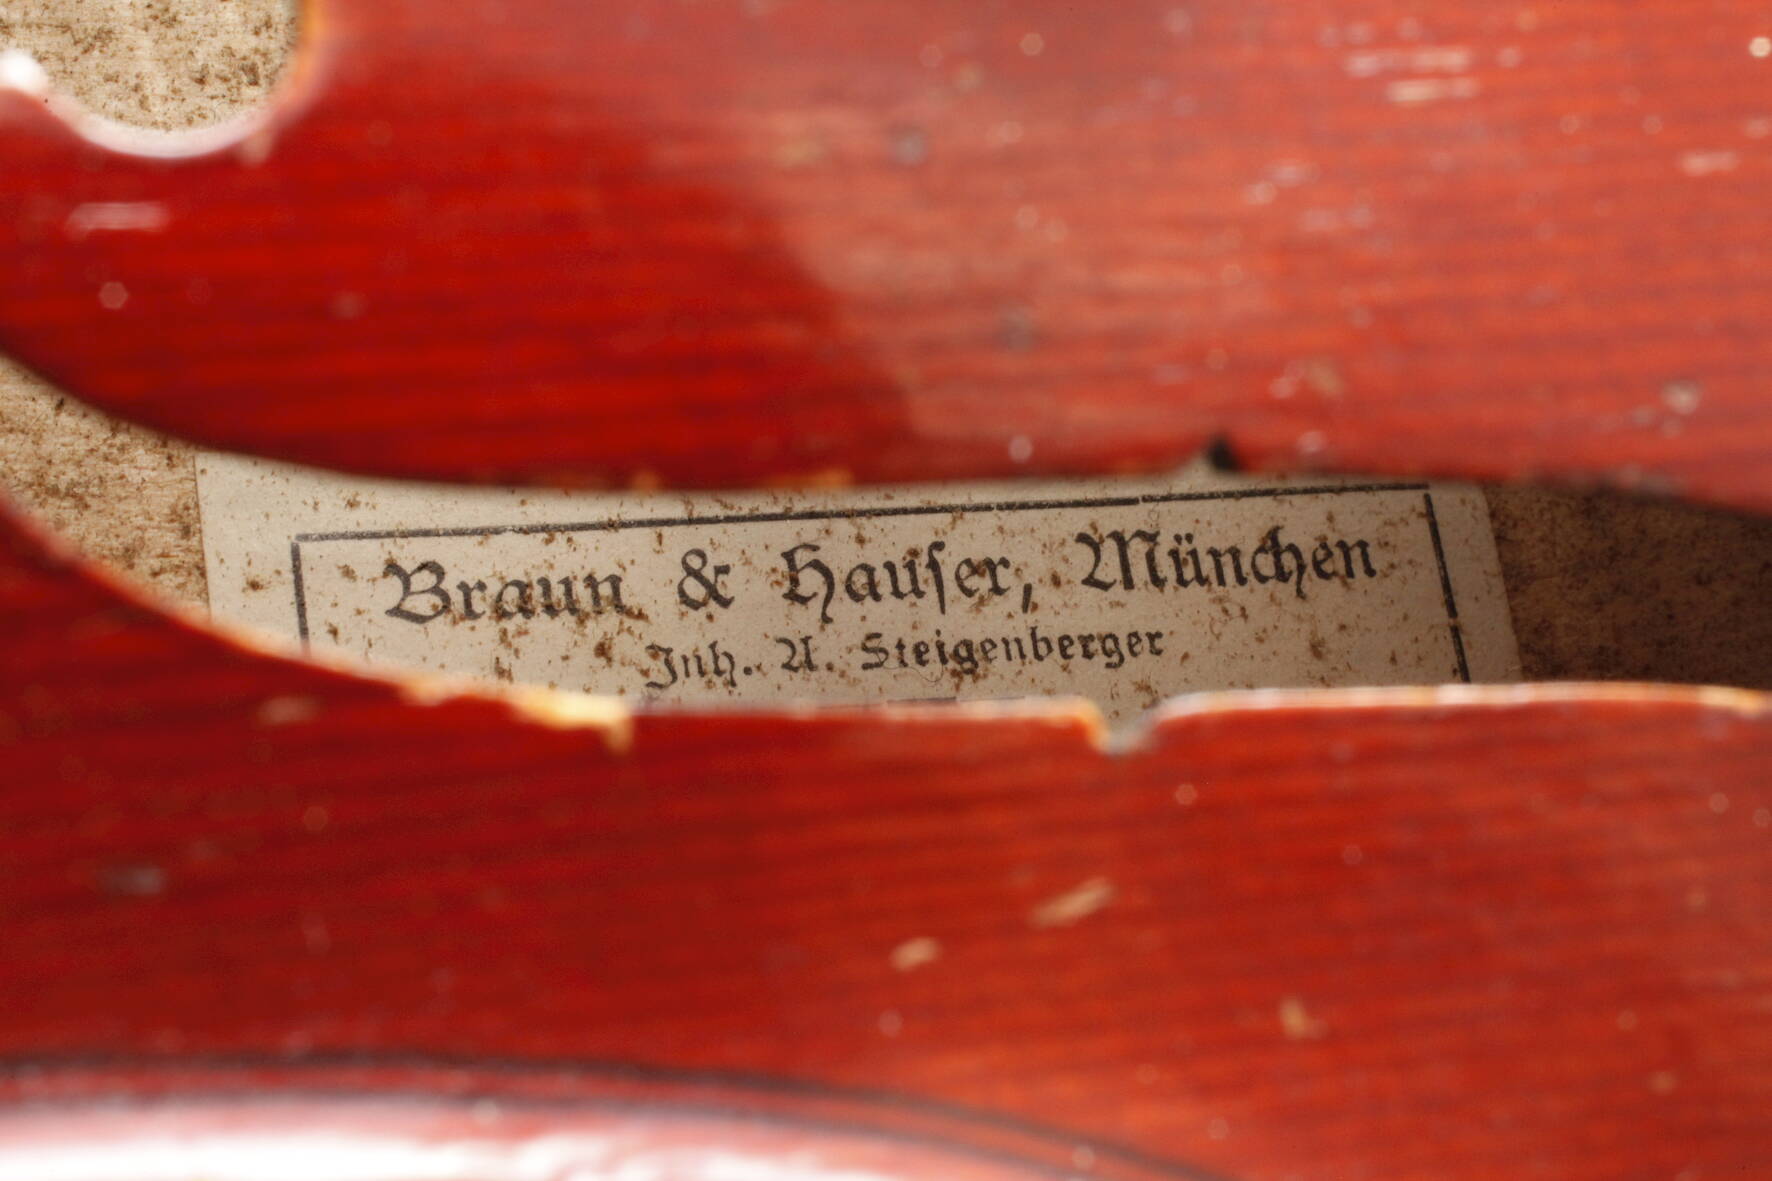 Violineum 1920, innen auf Klebezettel bez. Braun & Hauser München Saiteninstrumente, ungeteilter, - Image 7 of 7